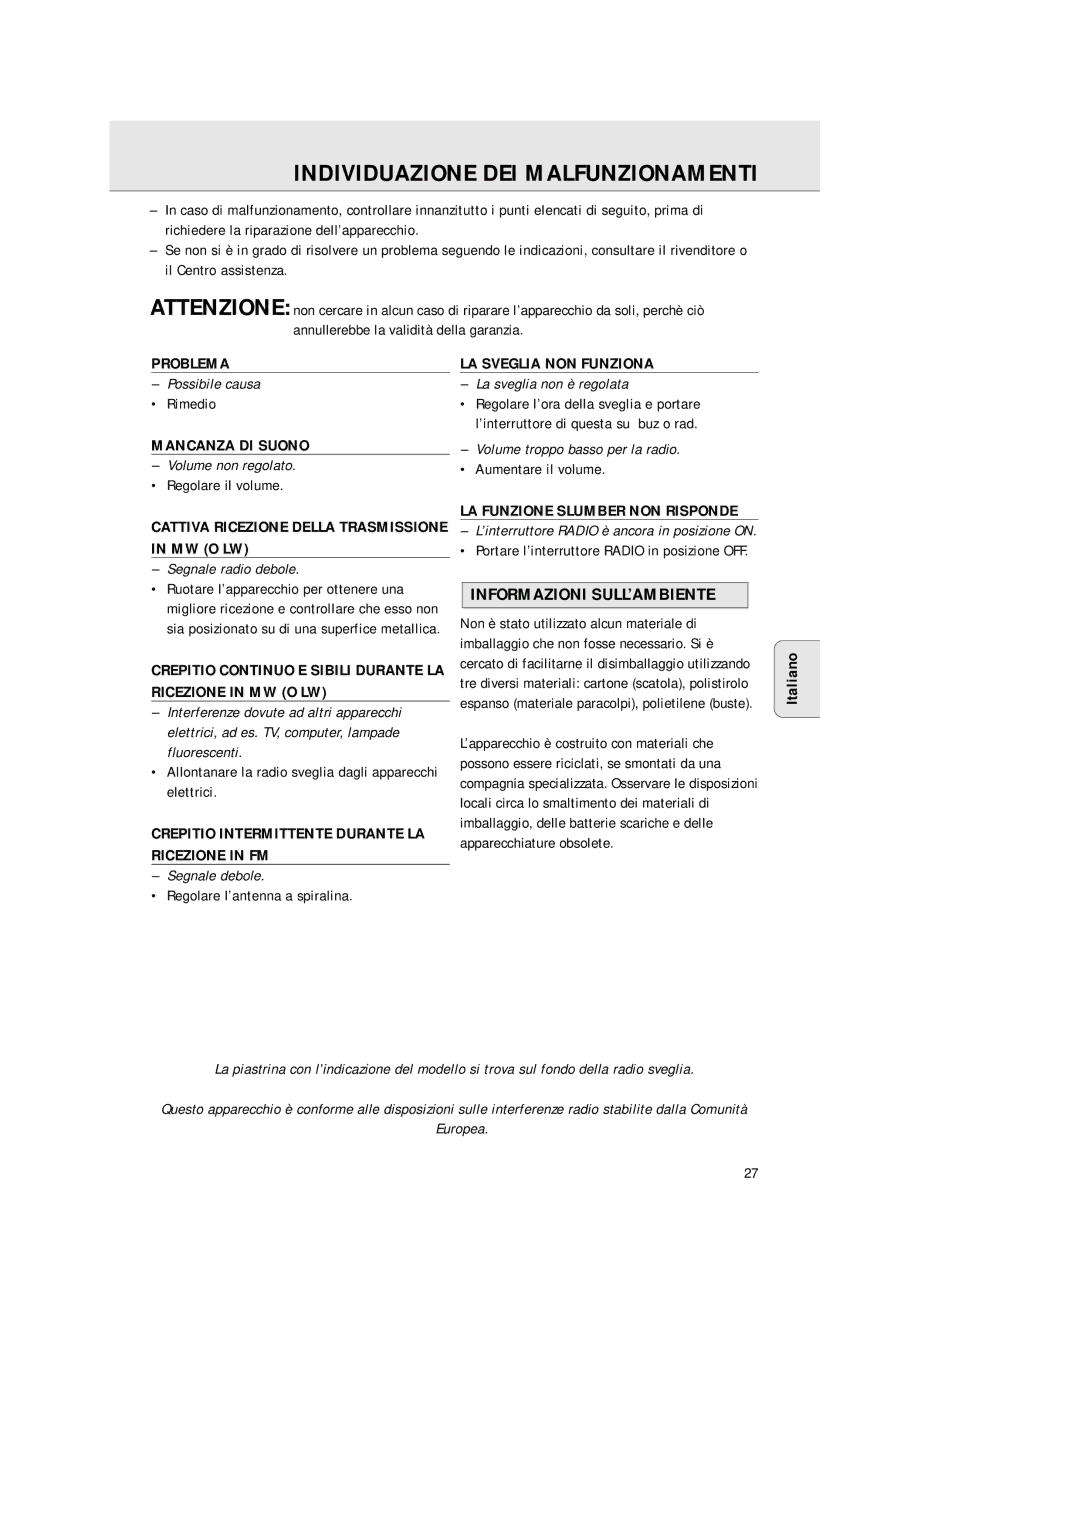 Philips AJ 3380 manual Individuazione DEI Malfunzionamenti, Informazioni SULL’AMBIENTE 